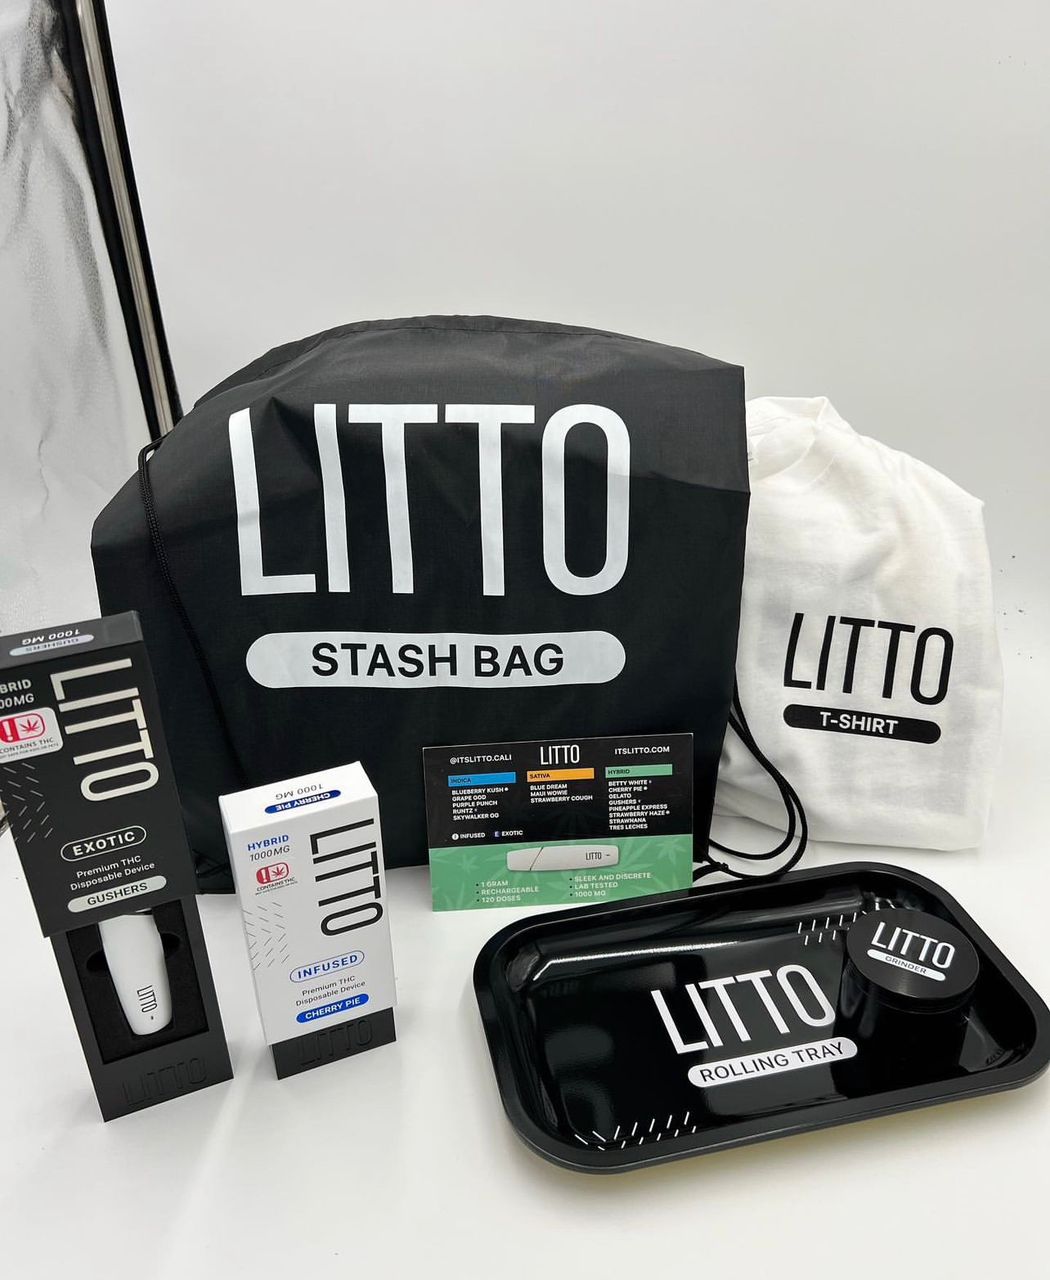 Litto -Stash Bag